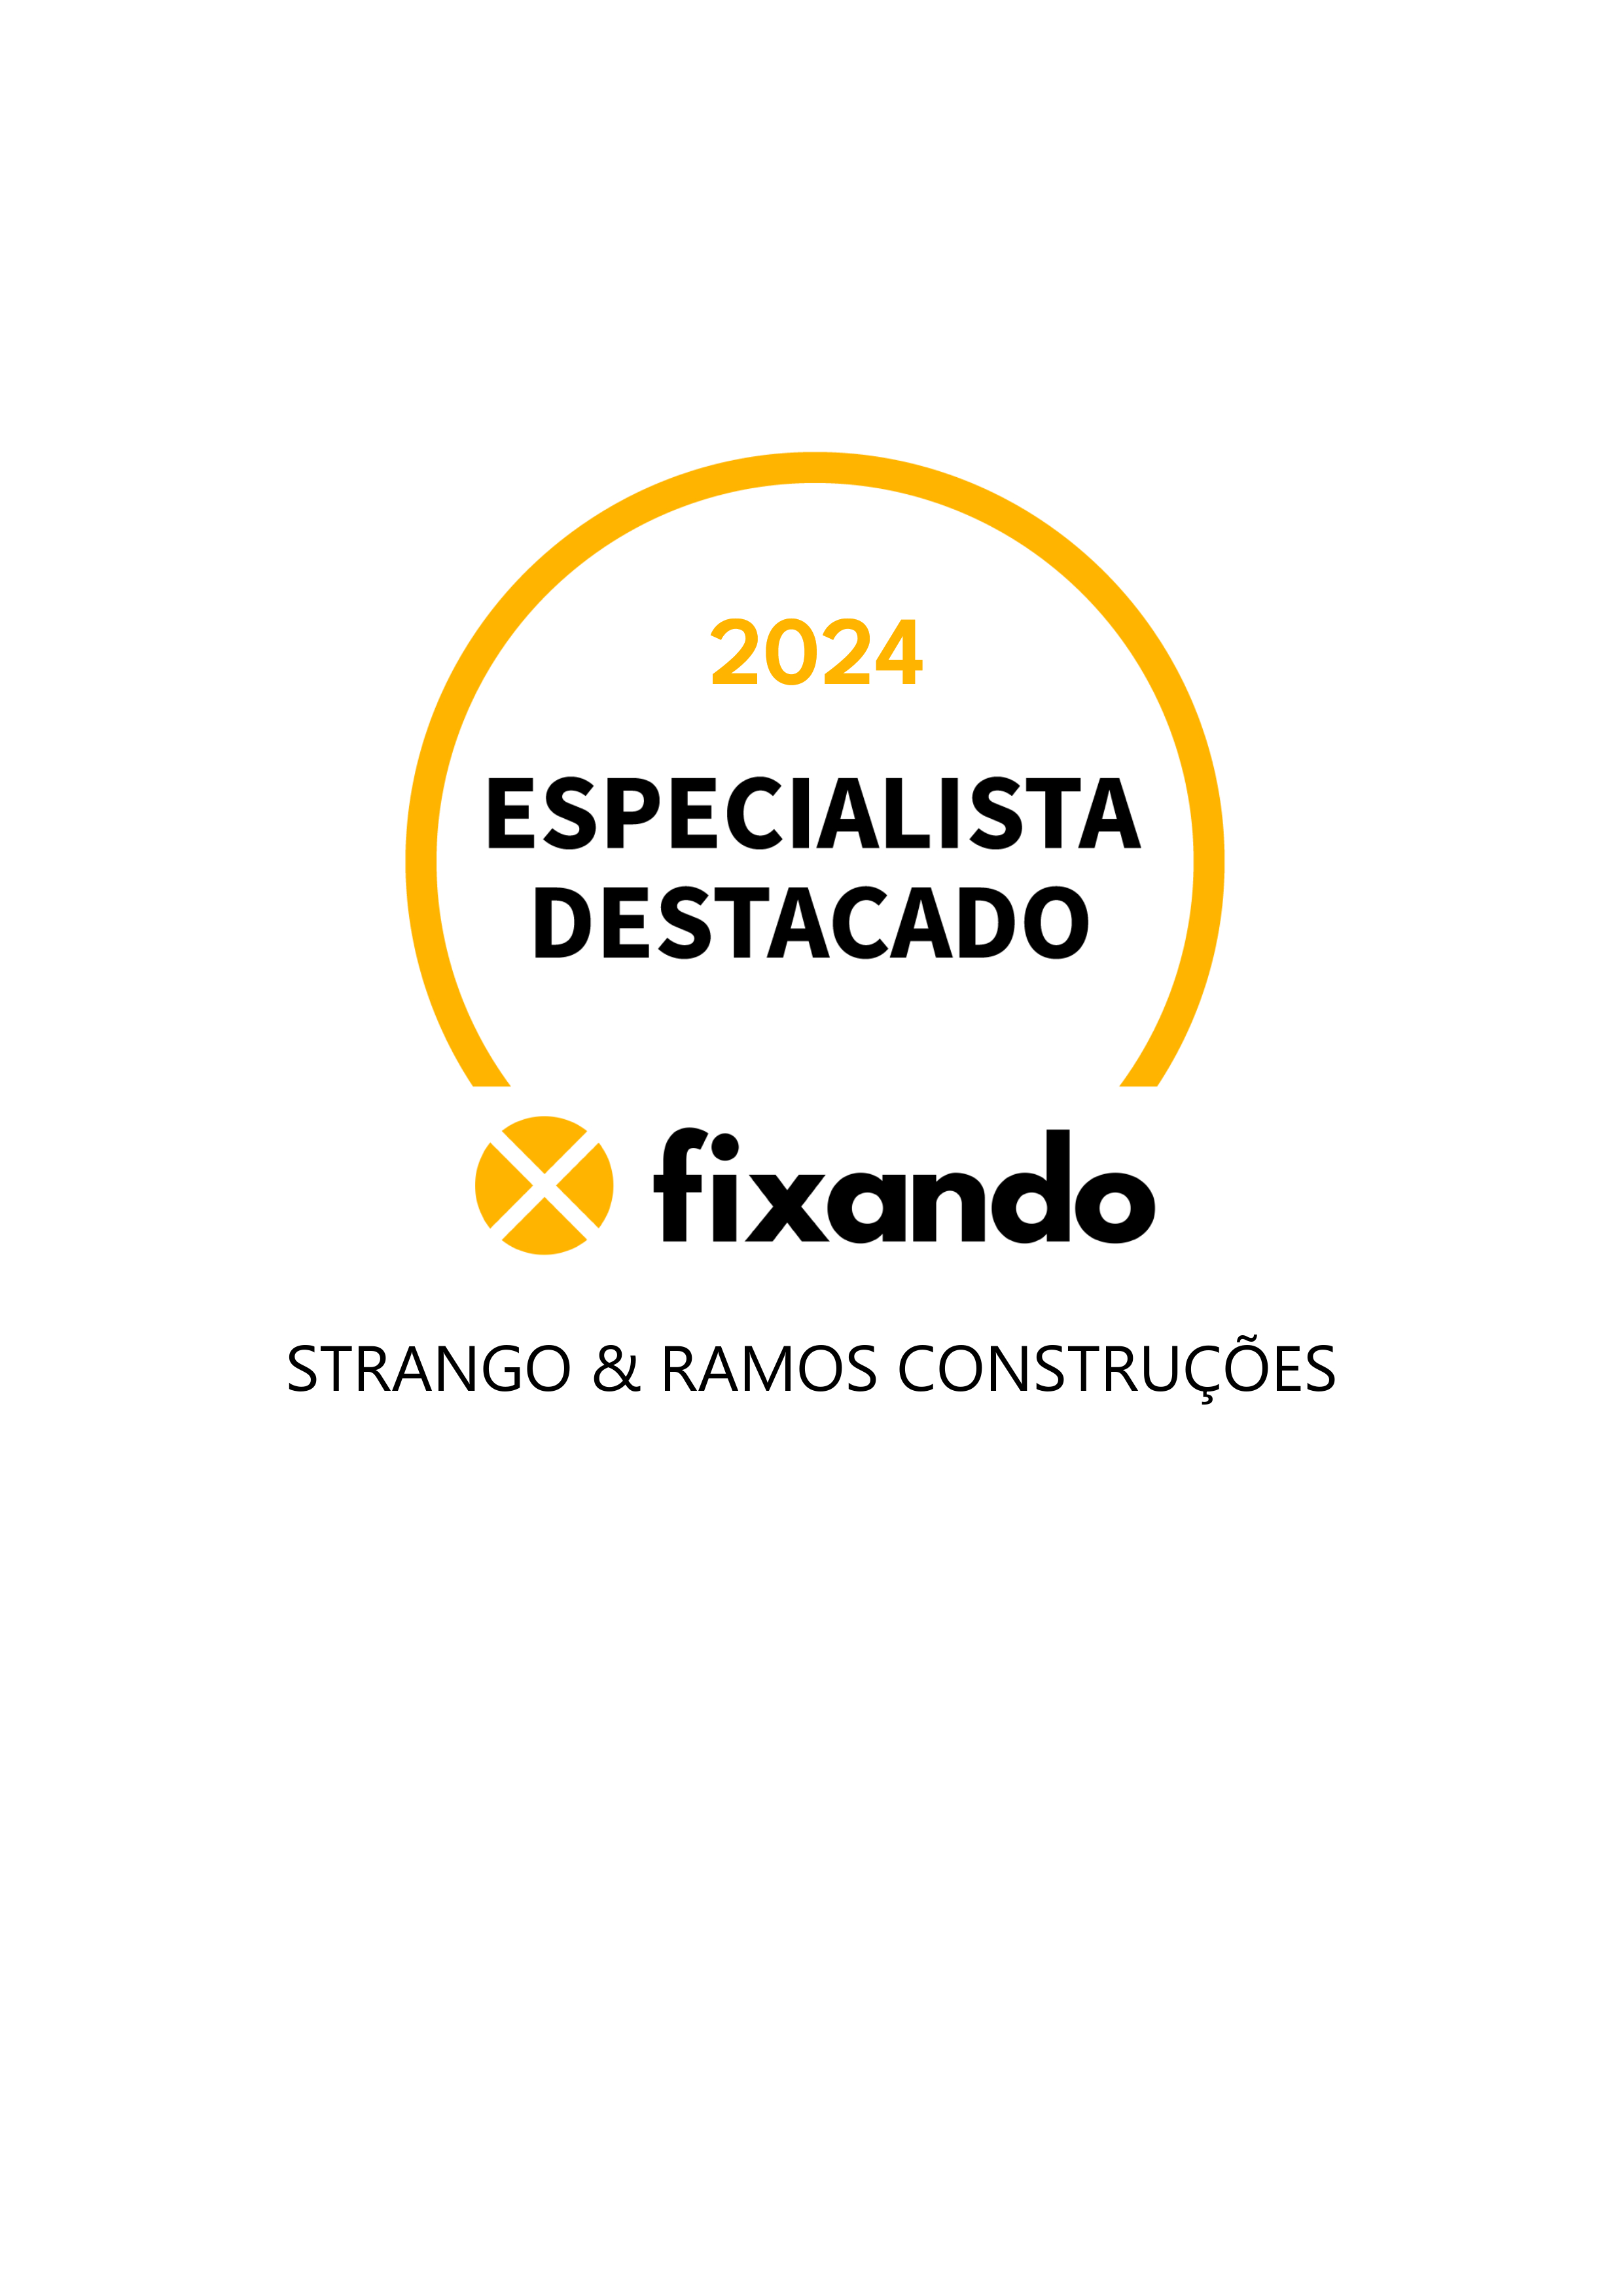 Strango & Ramos Construções - Loures - Instalação de Pavimento em Pedra ou Ladrilho